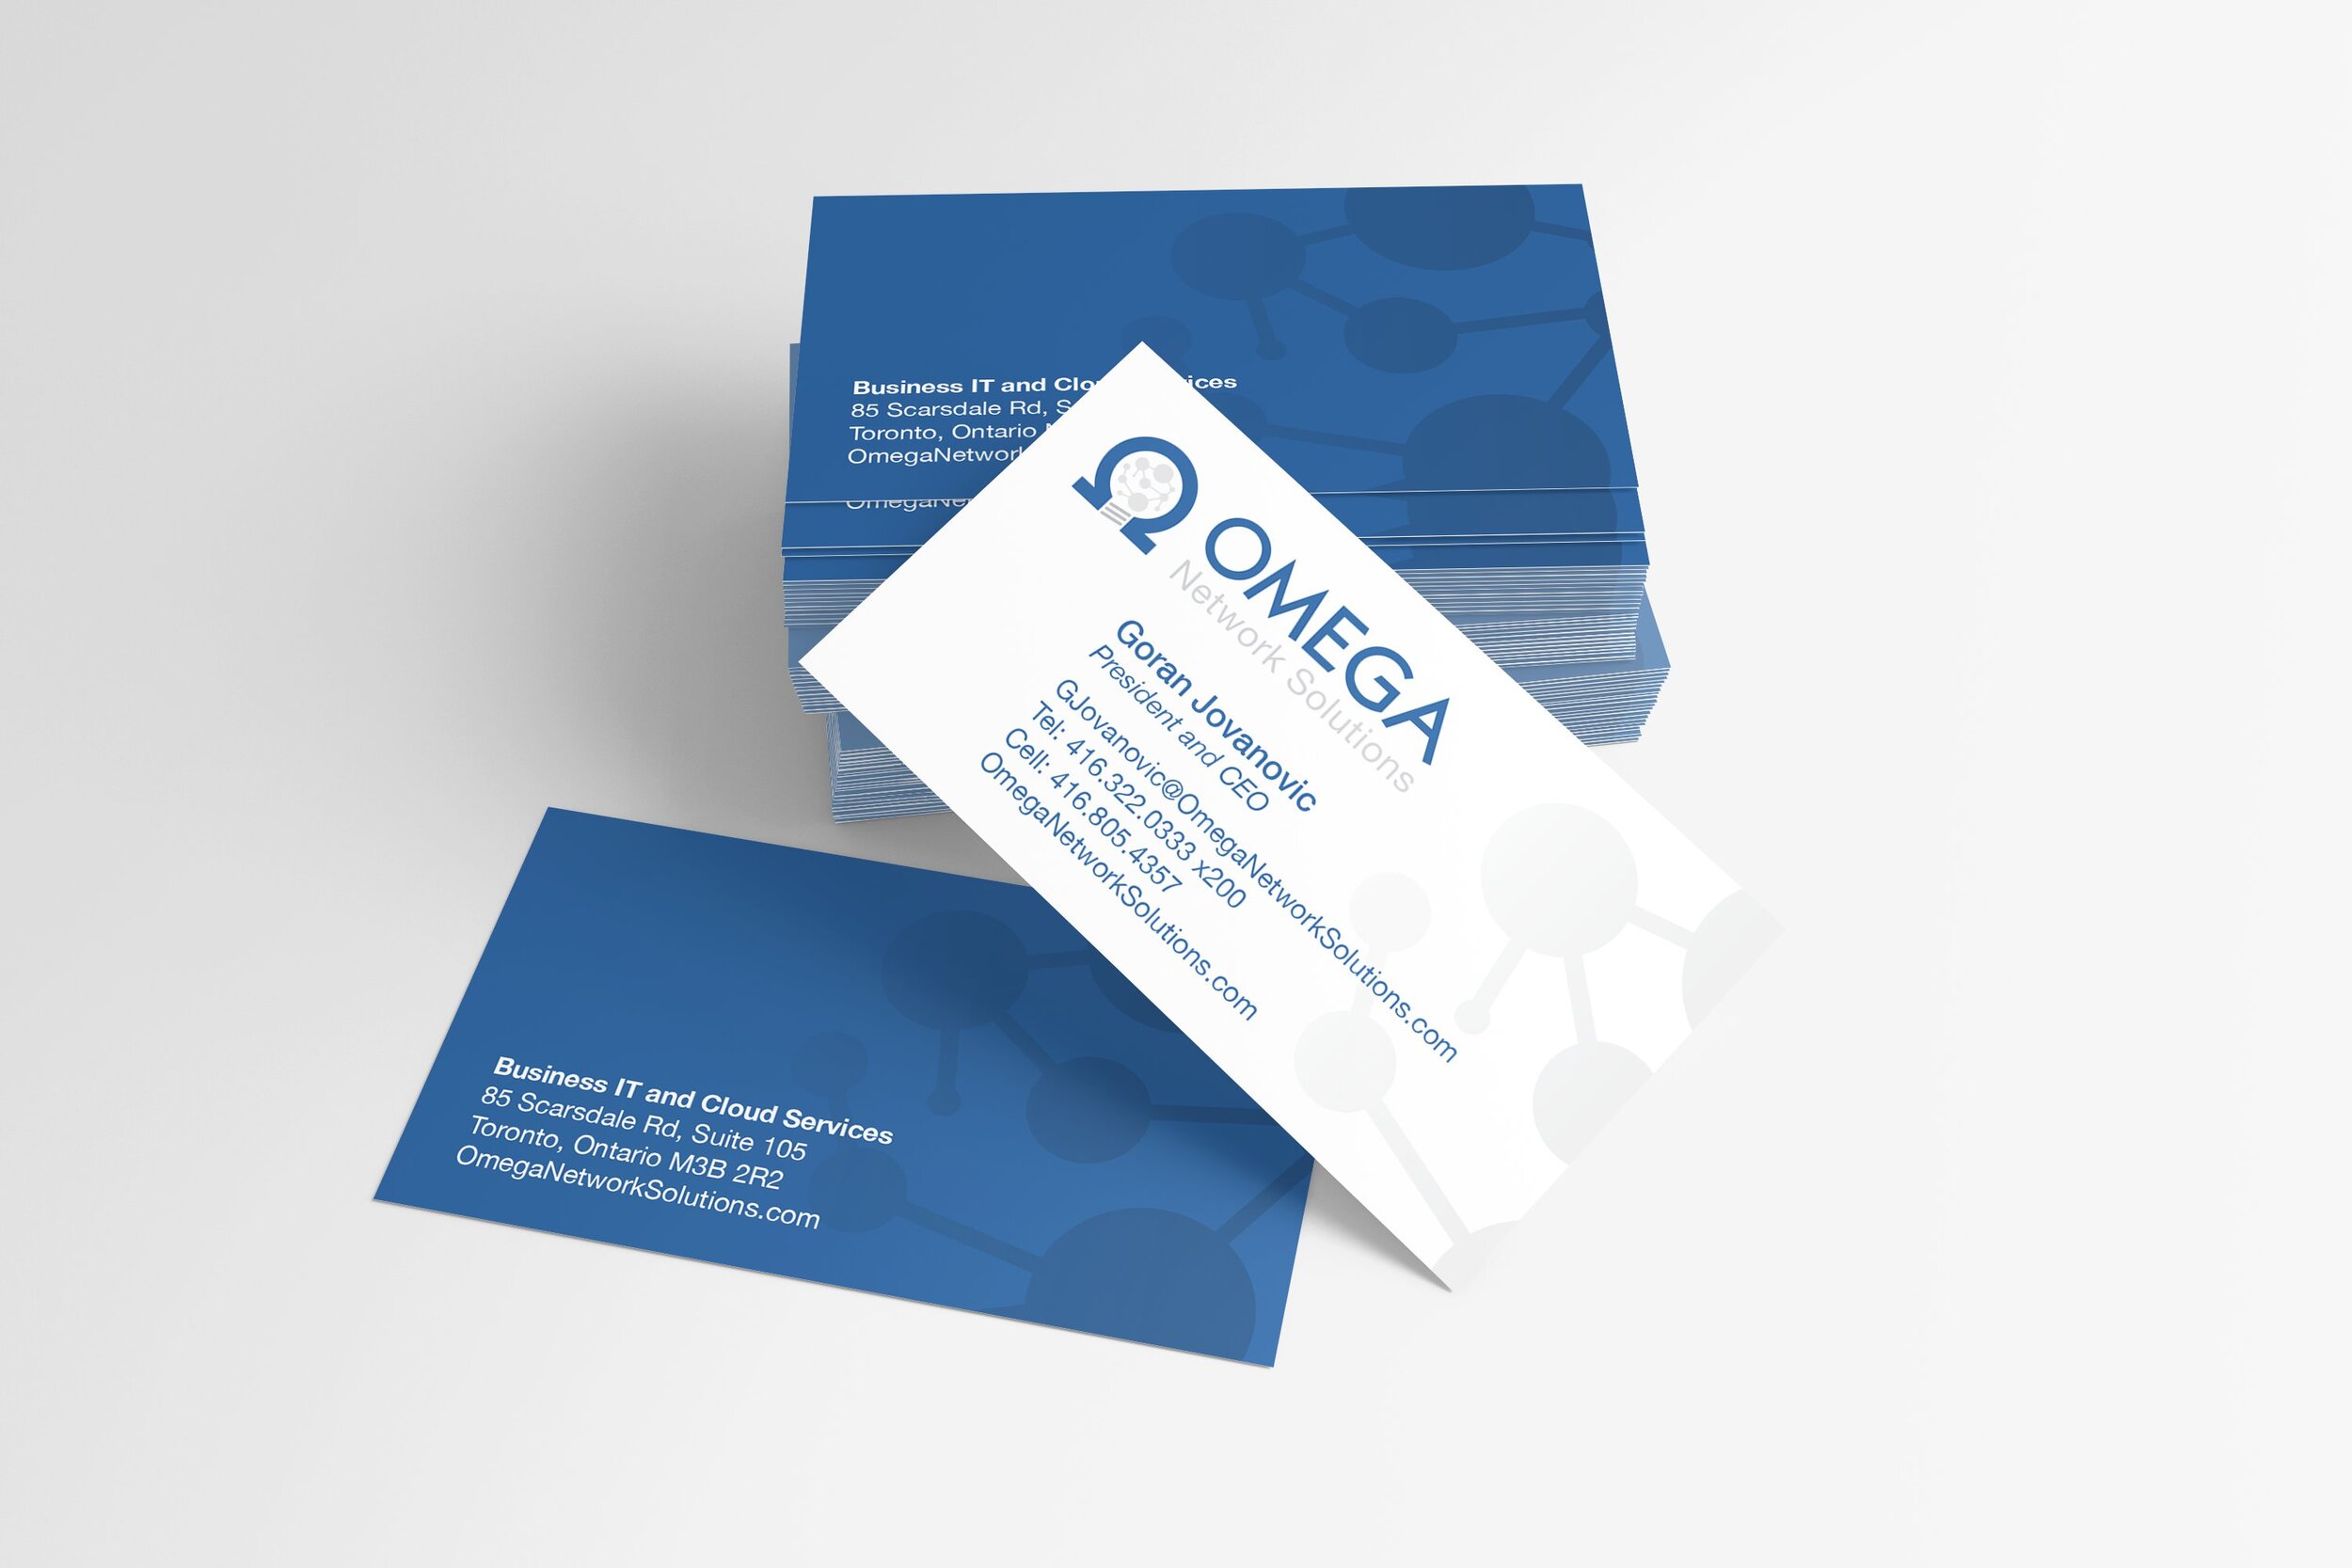 omega-network-solutions.jpg